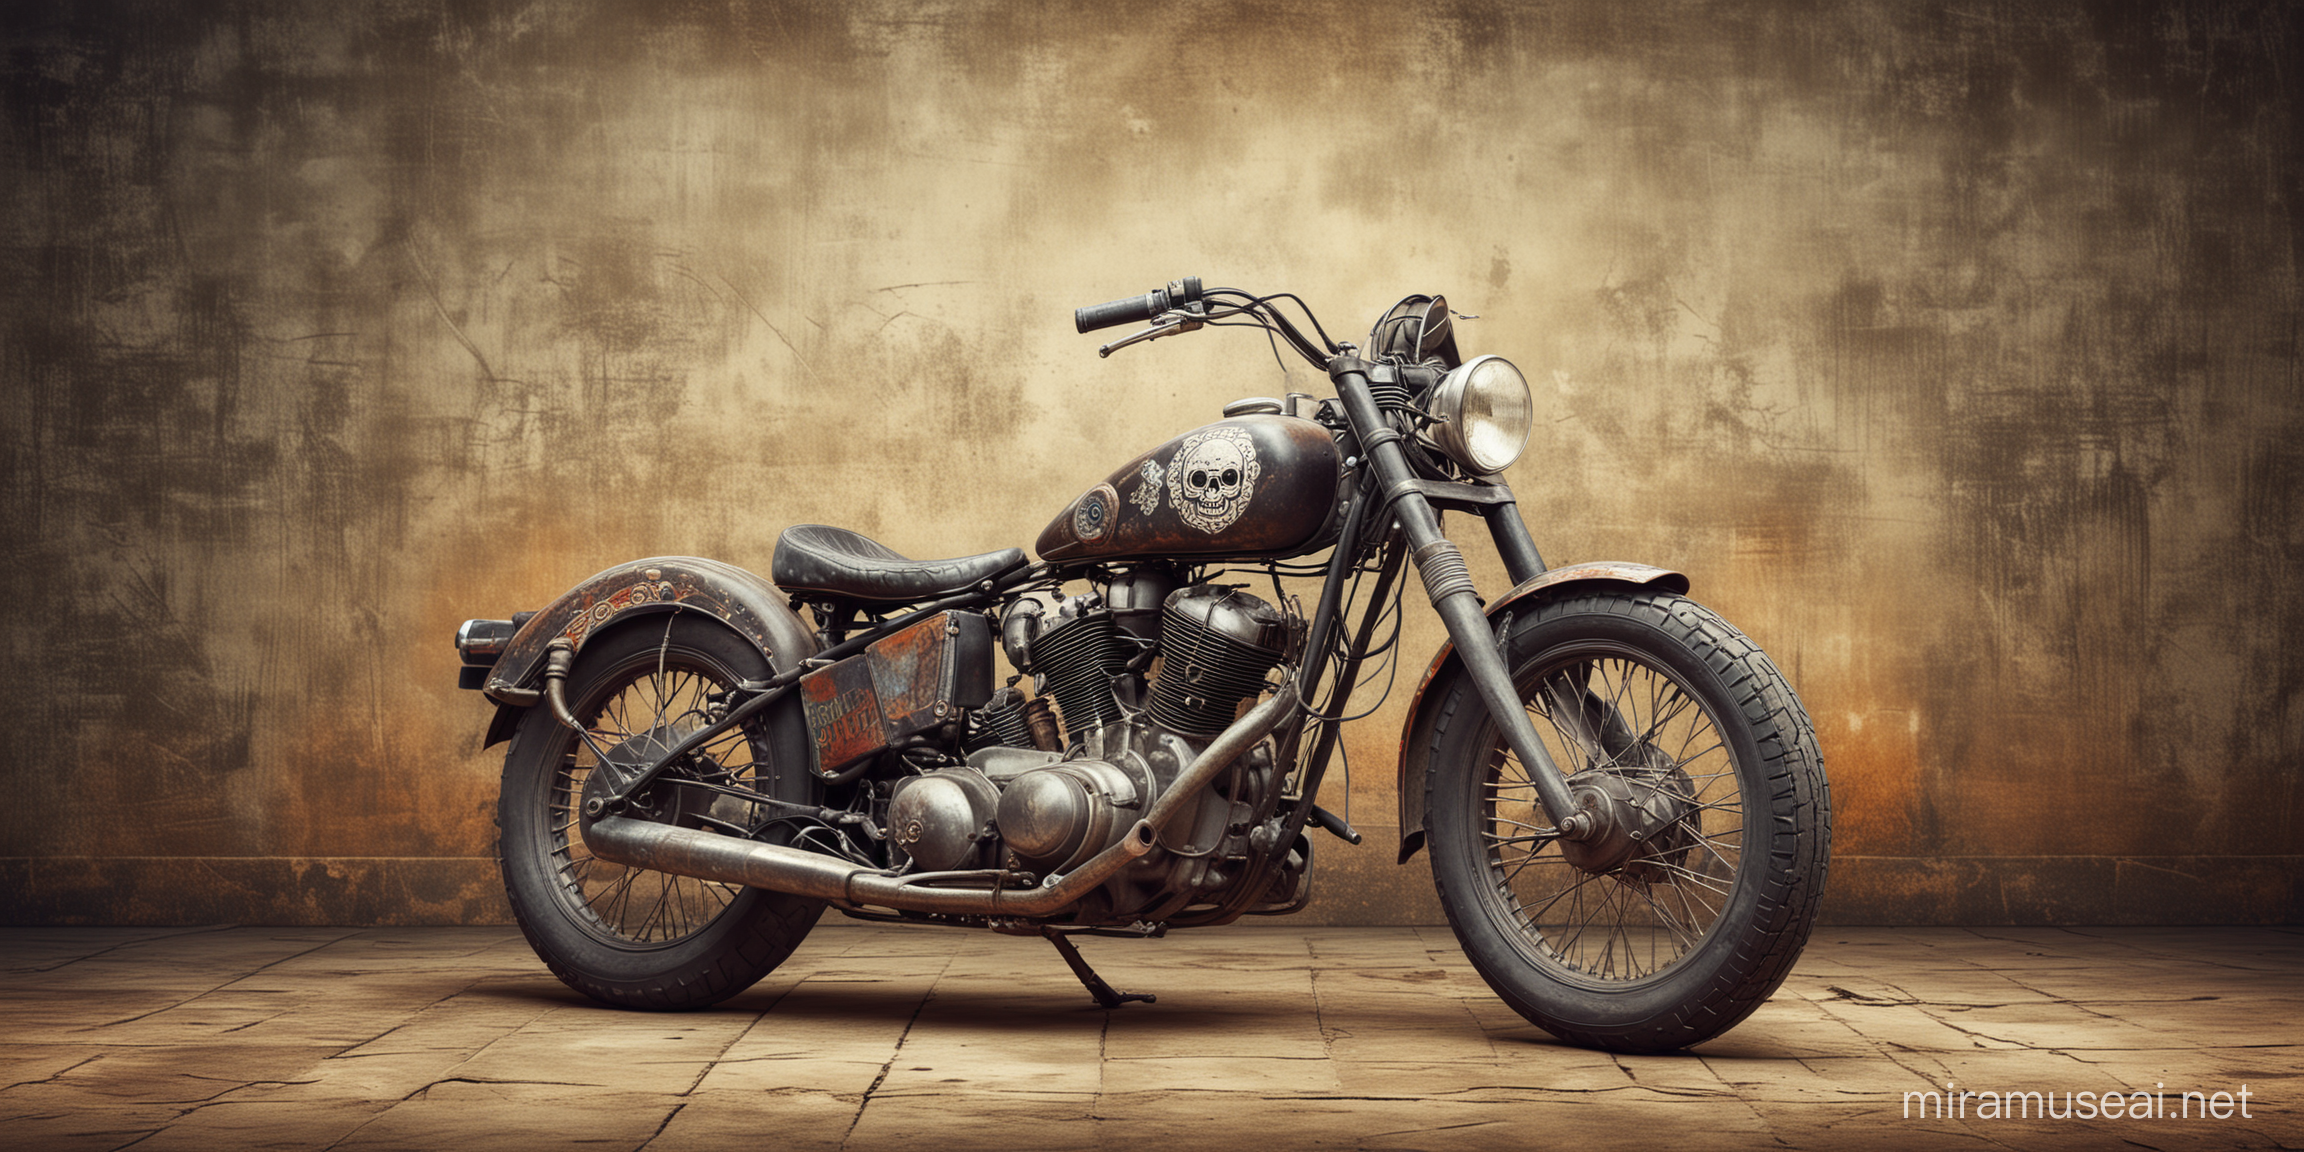 moto vintage com background desgastado e caveiras mexicanas